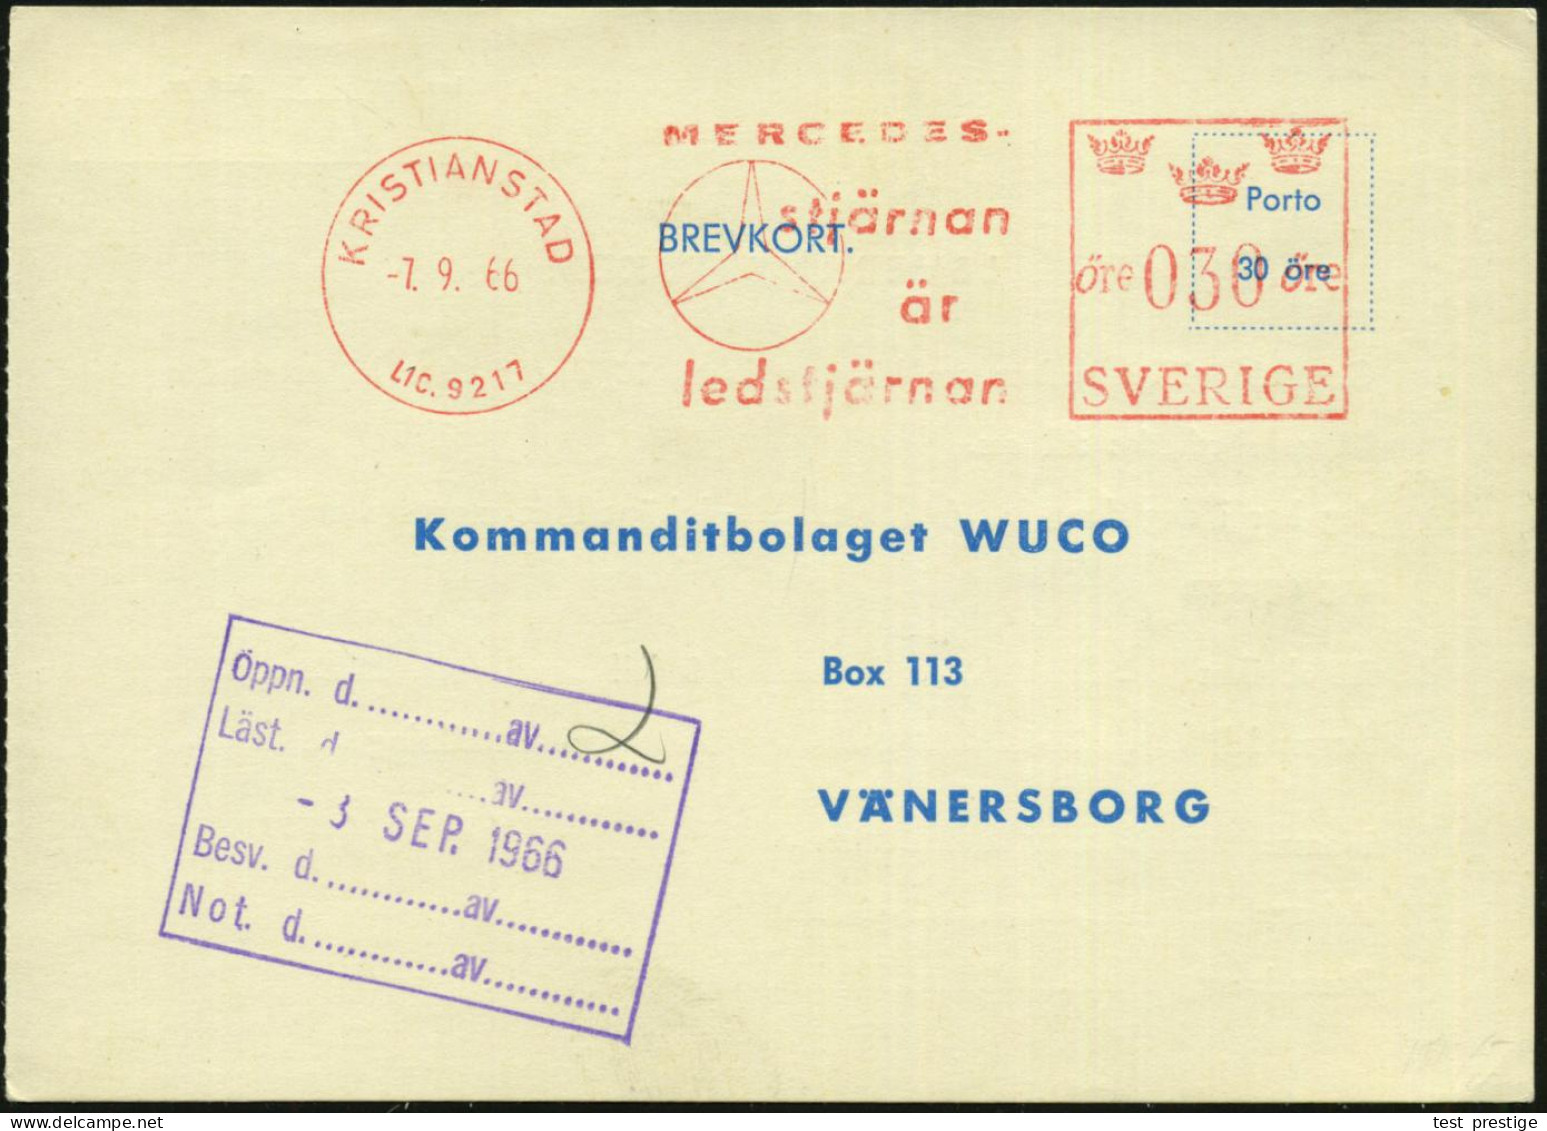 SCHWEDEN 1966 (7.9.) AFS: KRISTIANSAND/LIC.9217/MERCEDES/stjärnan.. = MB-Stern , Werkstatt-Kt. Für Einen Simca! - MERCED - Voitures